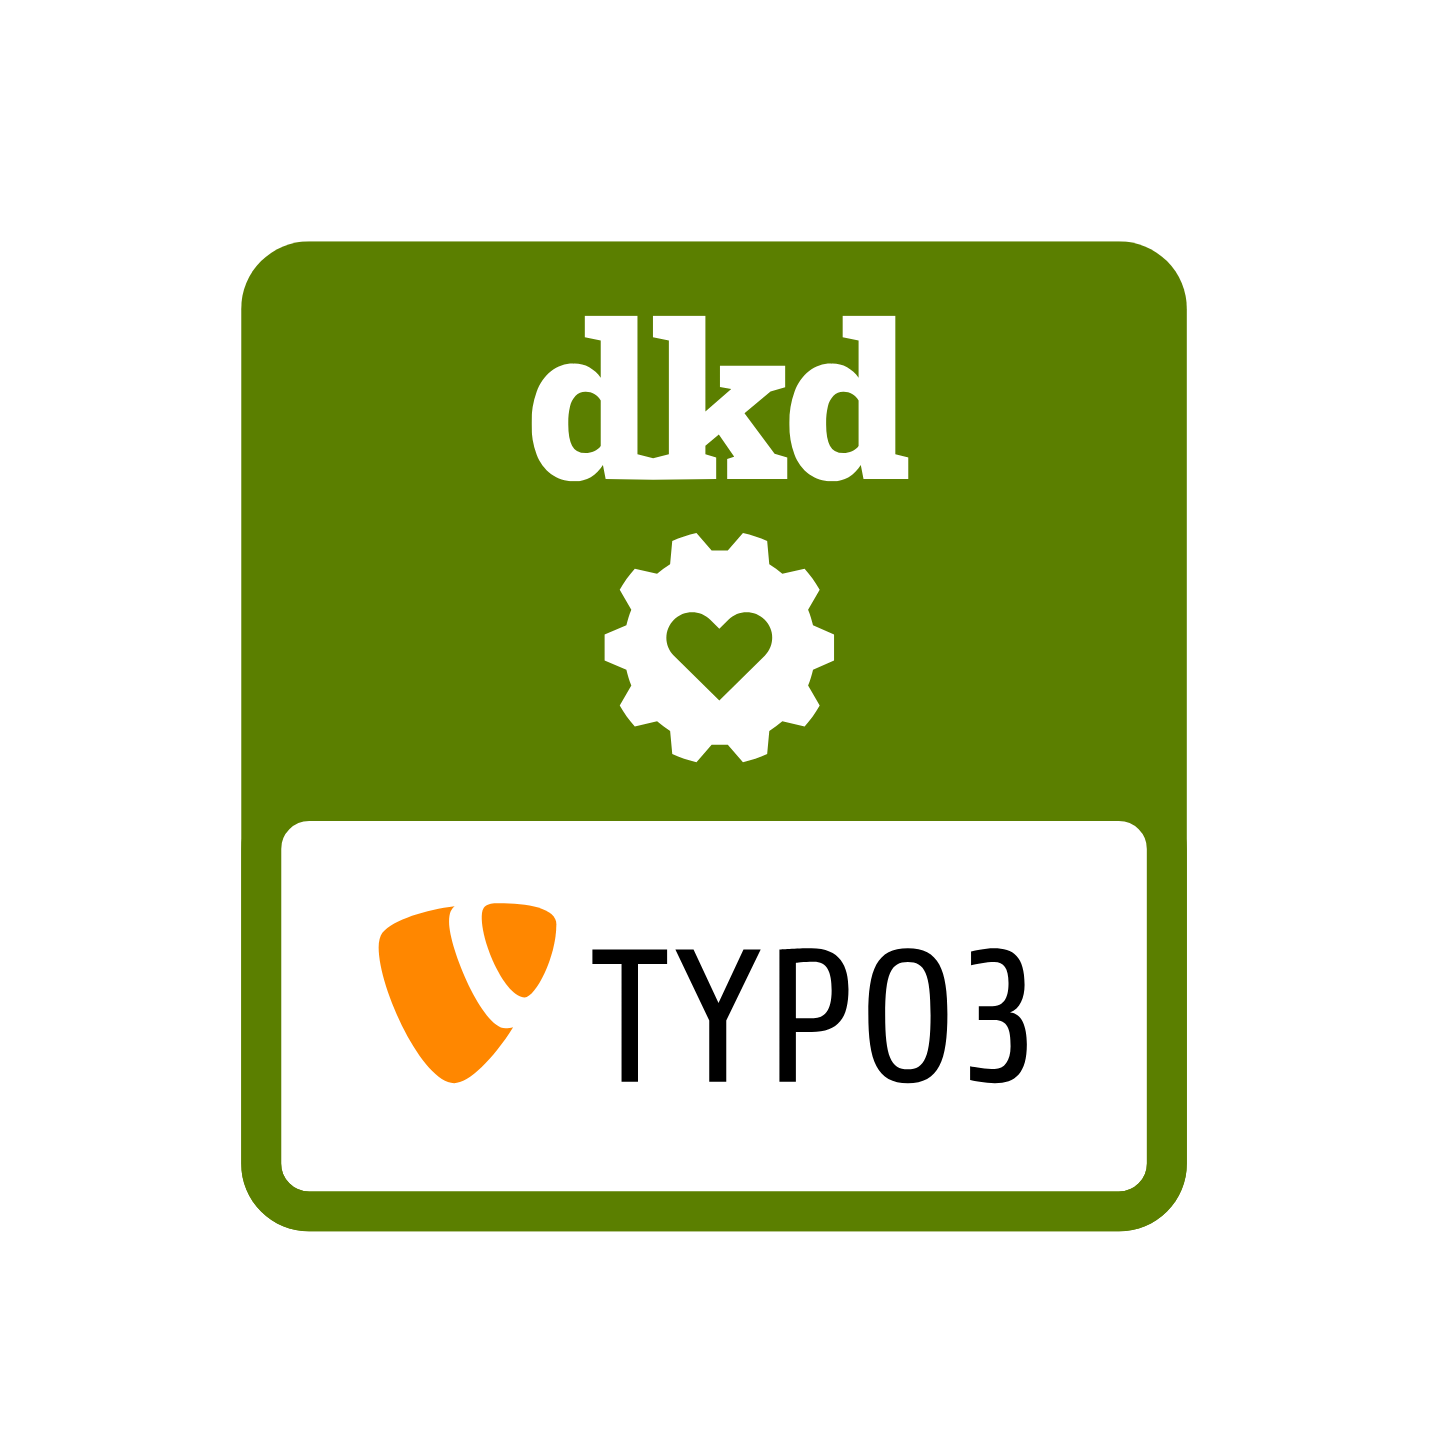 dkd-TYPO3-Logo in weiss auf grünem Hintergrund